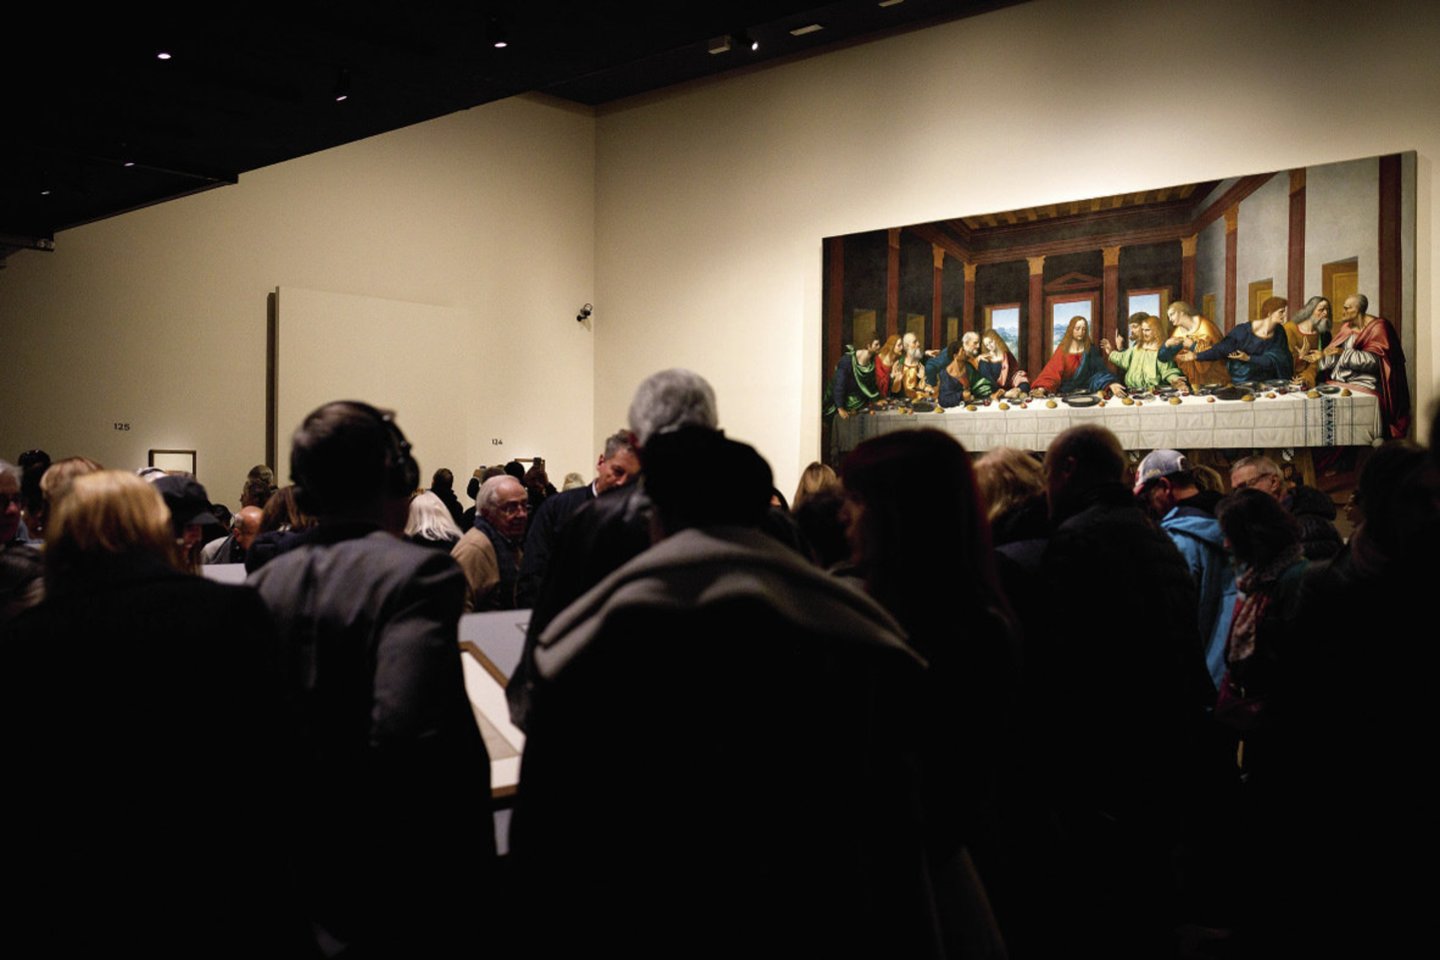 Spalio 24-ąją prasidėjusiai jubiliejinei L.da Vinci parodai, kuriai Luvras ruošėsi net dešimt metų, surinkta daugiausia italų genijaus darbų vienoje vietoje.<br>„Scanpix“ nuotr.